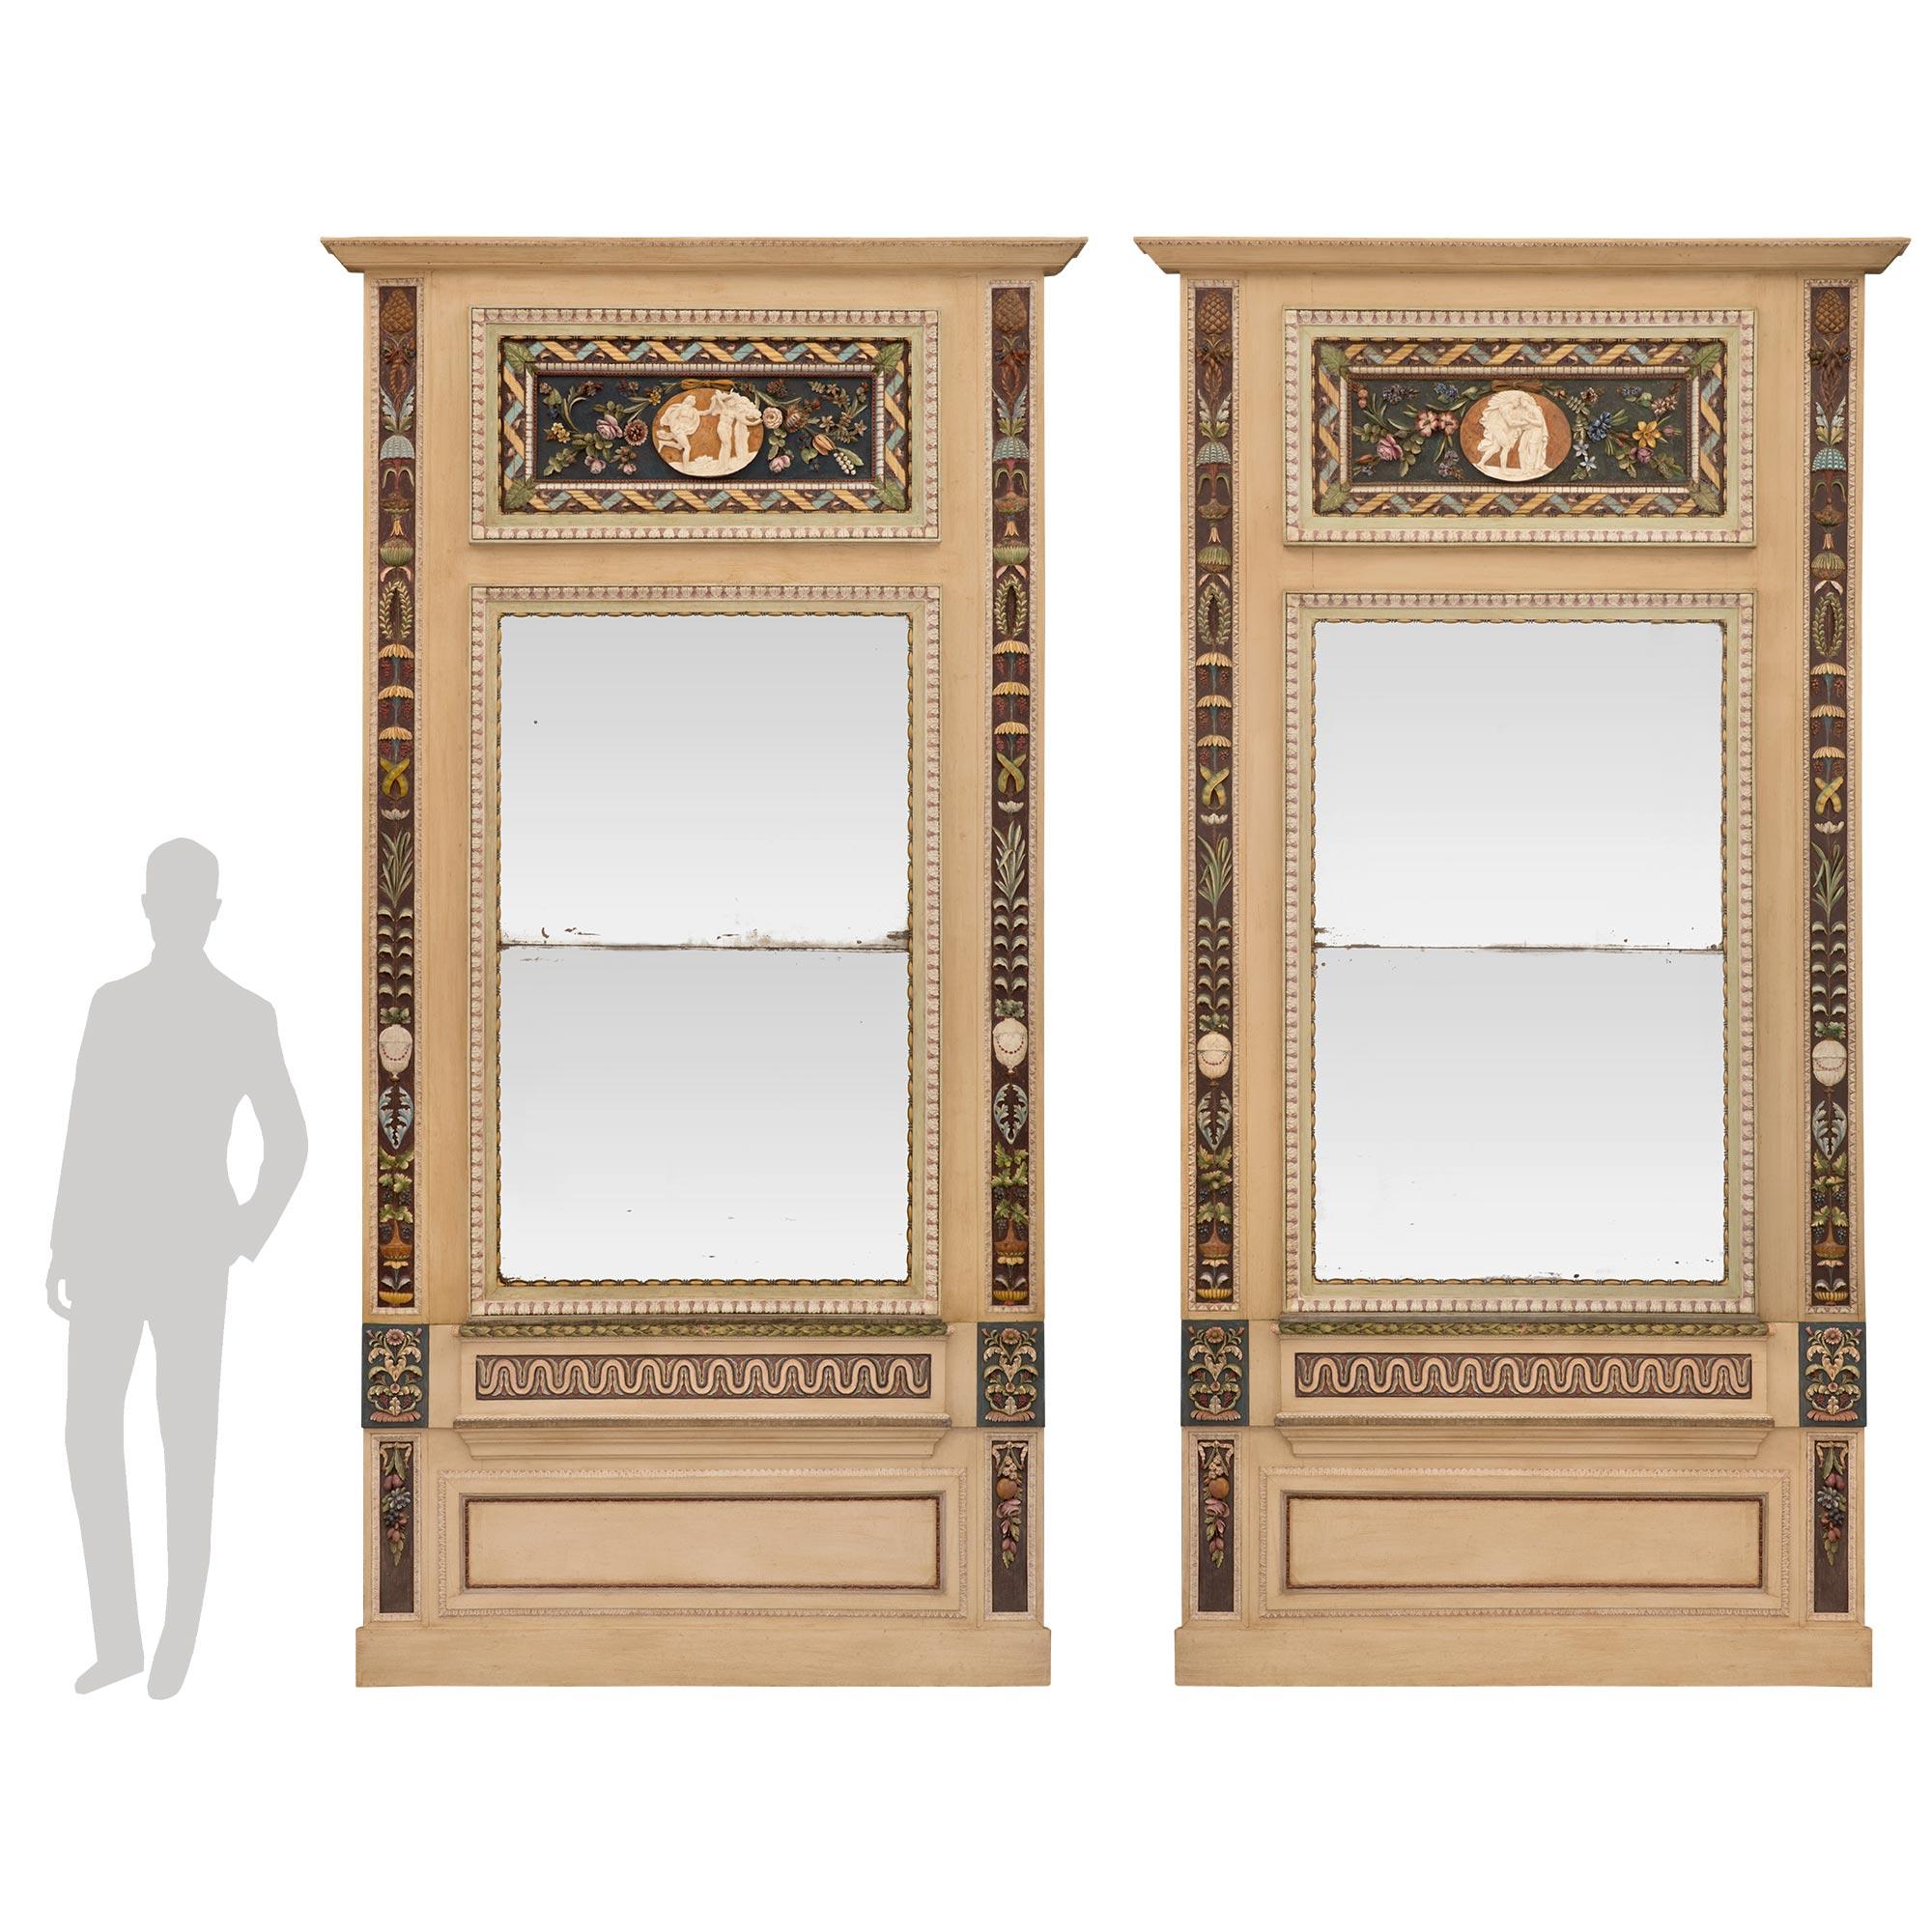 Une superbe et extrêmement décorative paire de miroirs trumeaux en bois patiné de style néo-classique italien du début du XIXe siècle. Chaque miroir est surélevé par une élégante base mouchetée sous un panneau en retrait encadré d'une fine bordure